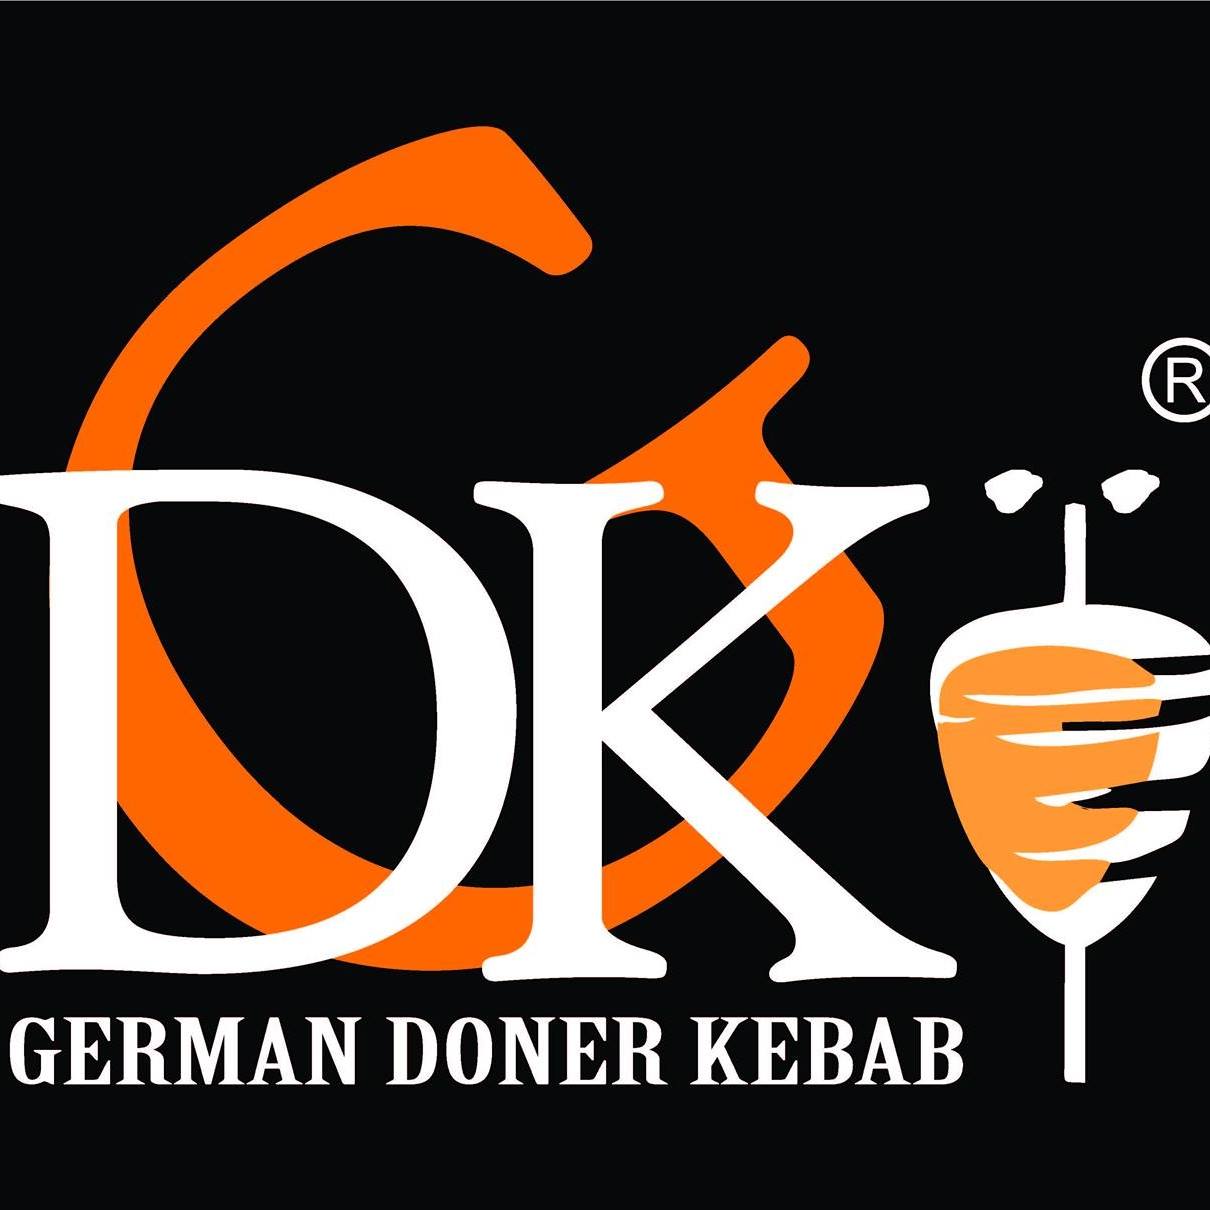 German Doner Kebab Logo